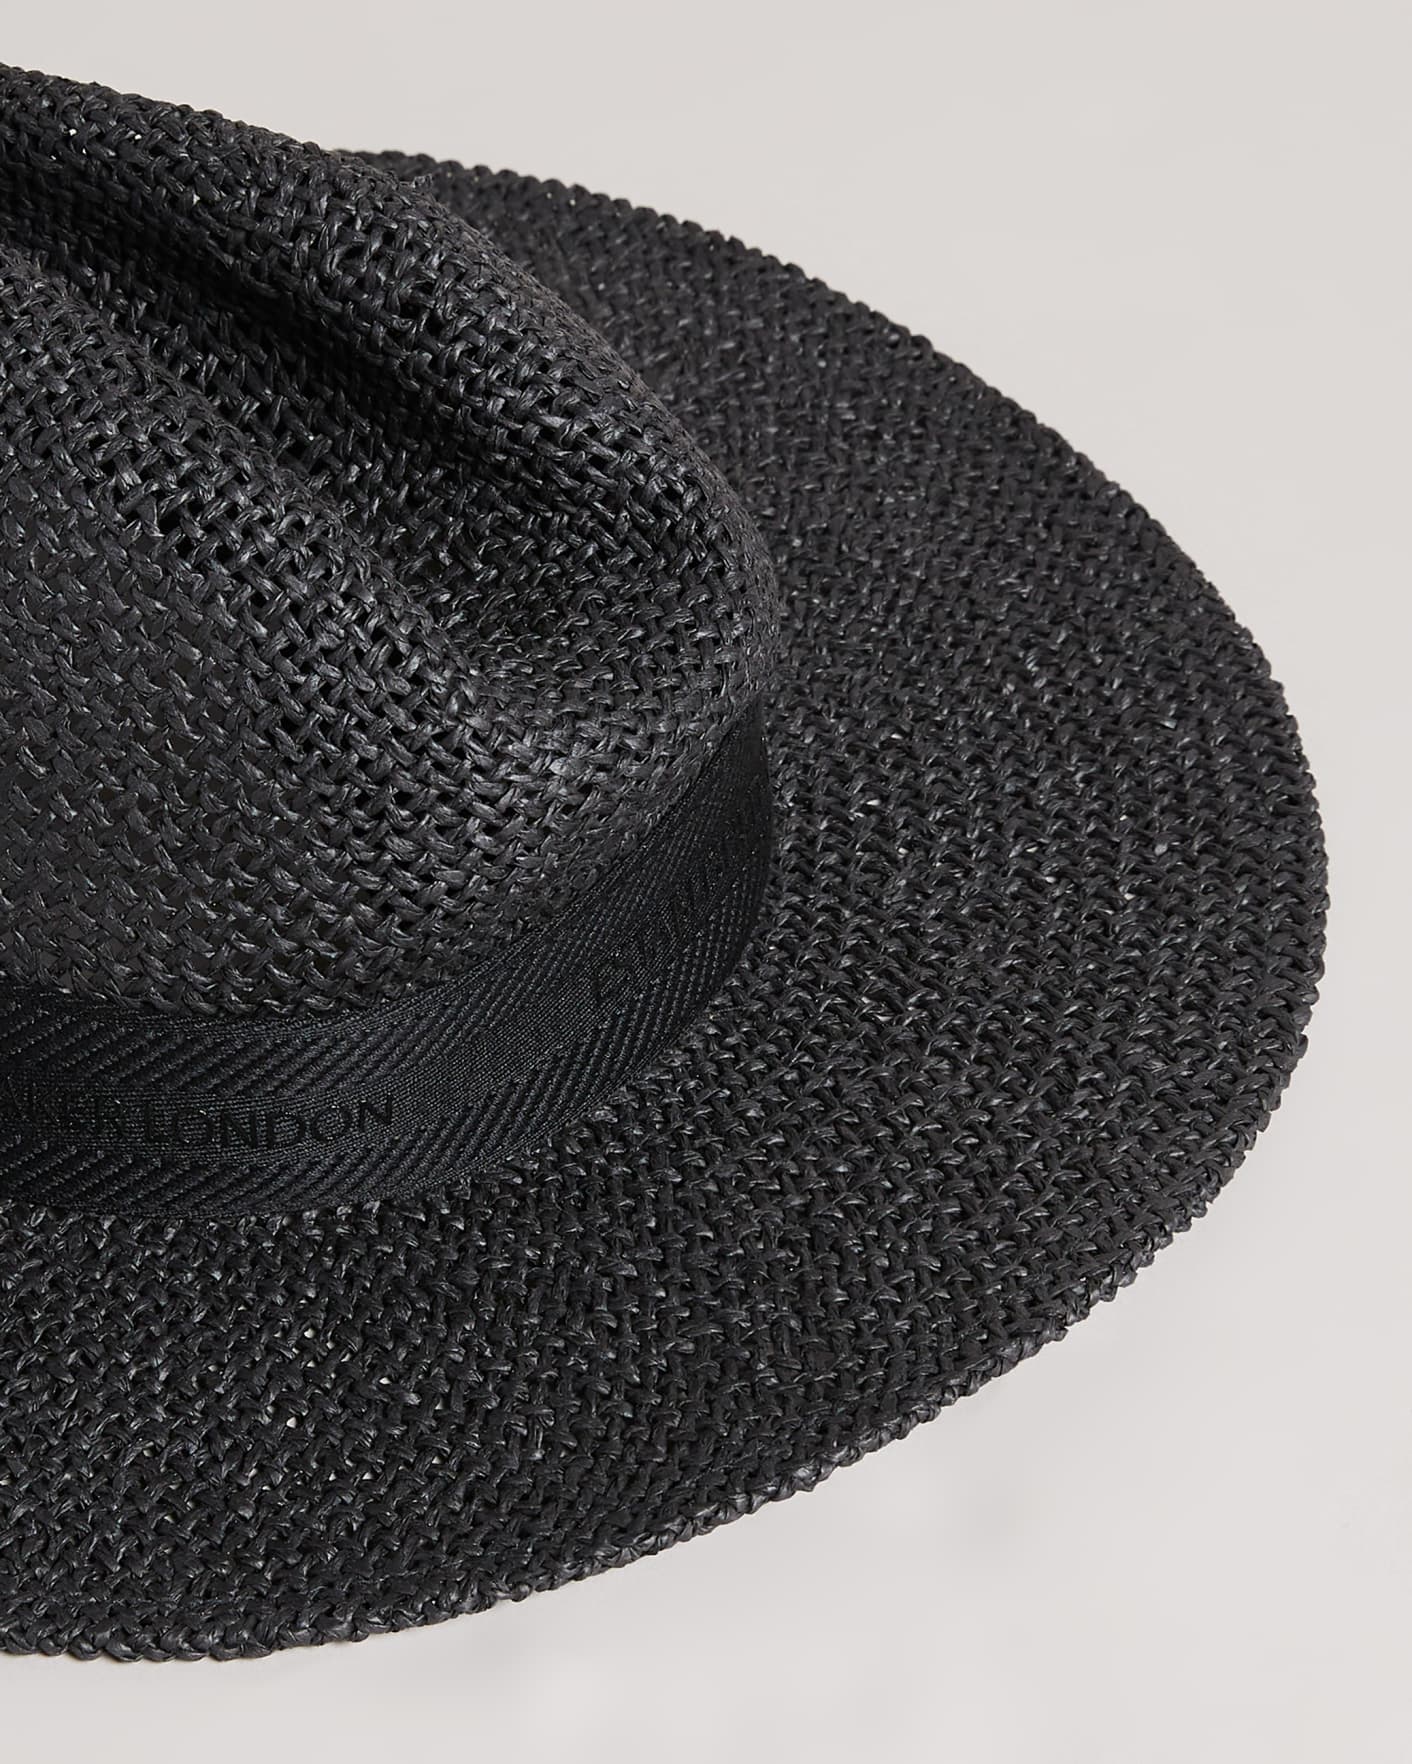 Negro Sombrero Panamá Rafia Ted Baker